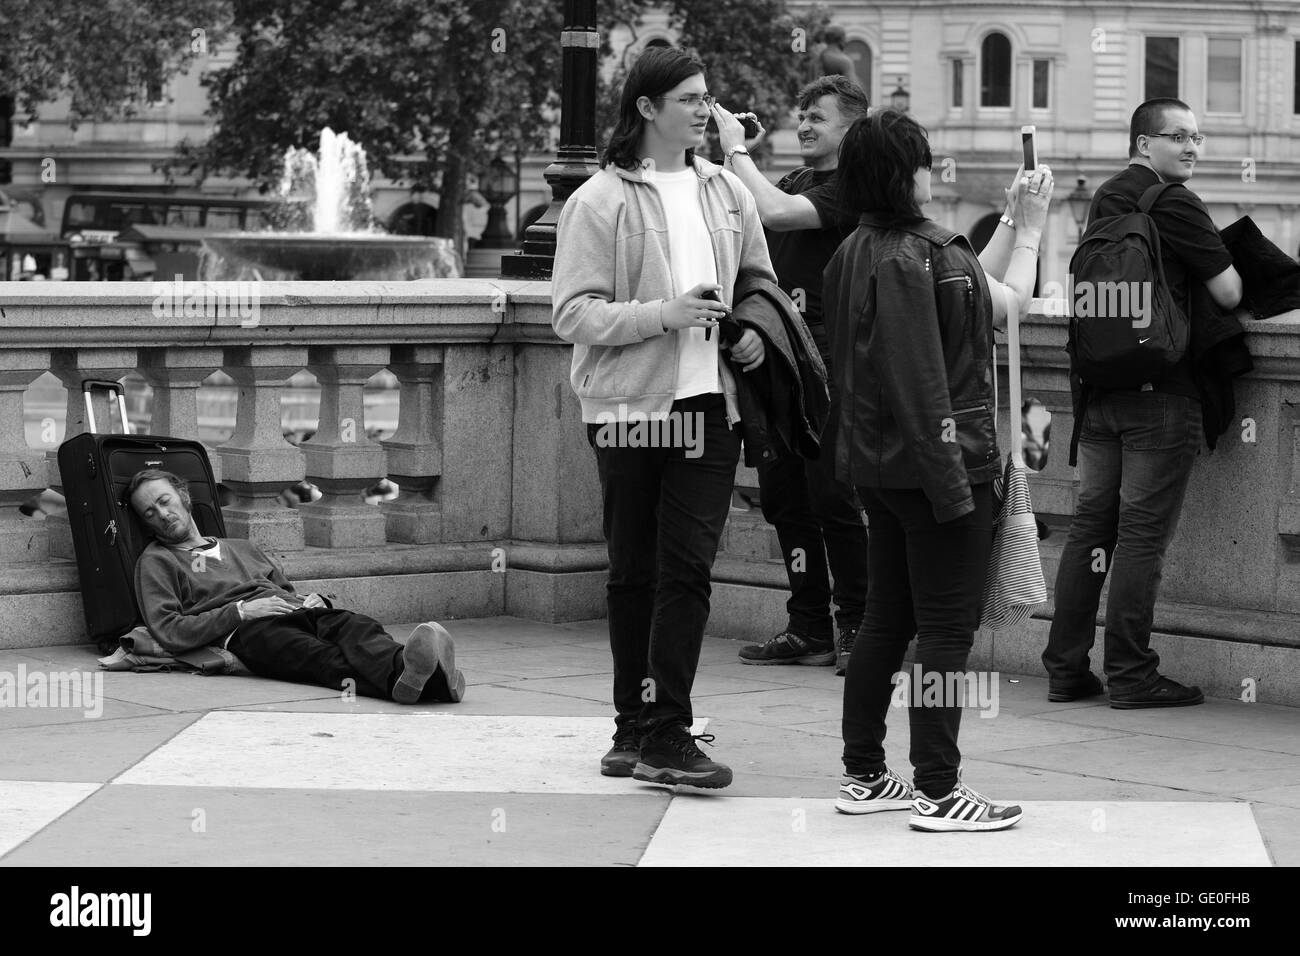 Un estimateur est situé sur le terrain à Trafalgar Square, dormir, tandis que les touristes se trouvent à proximité à la recherche et à la prise de photographies de la Squ Banque D'Images